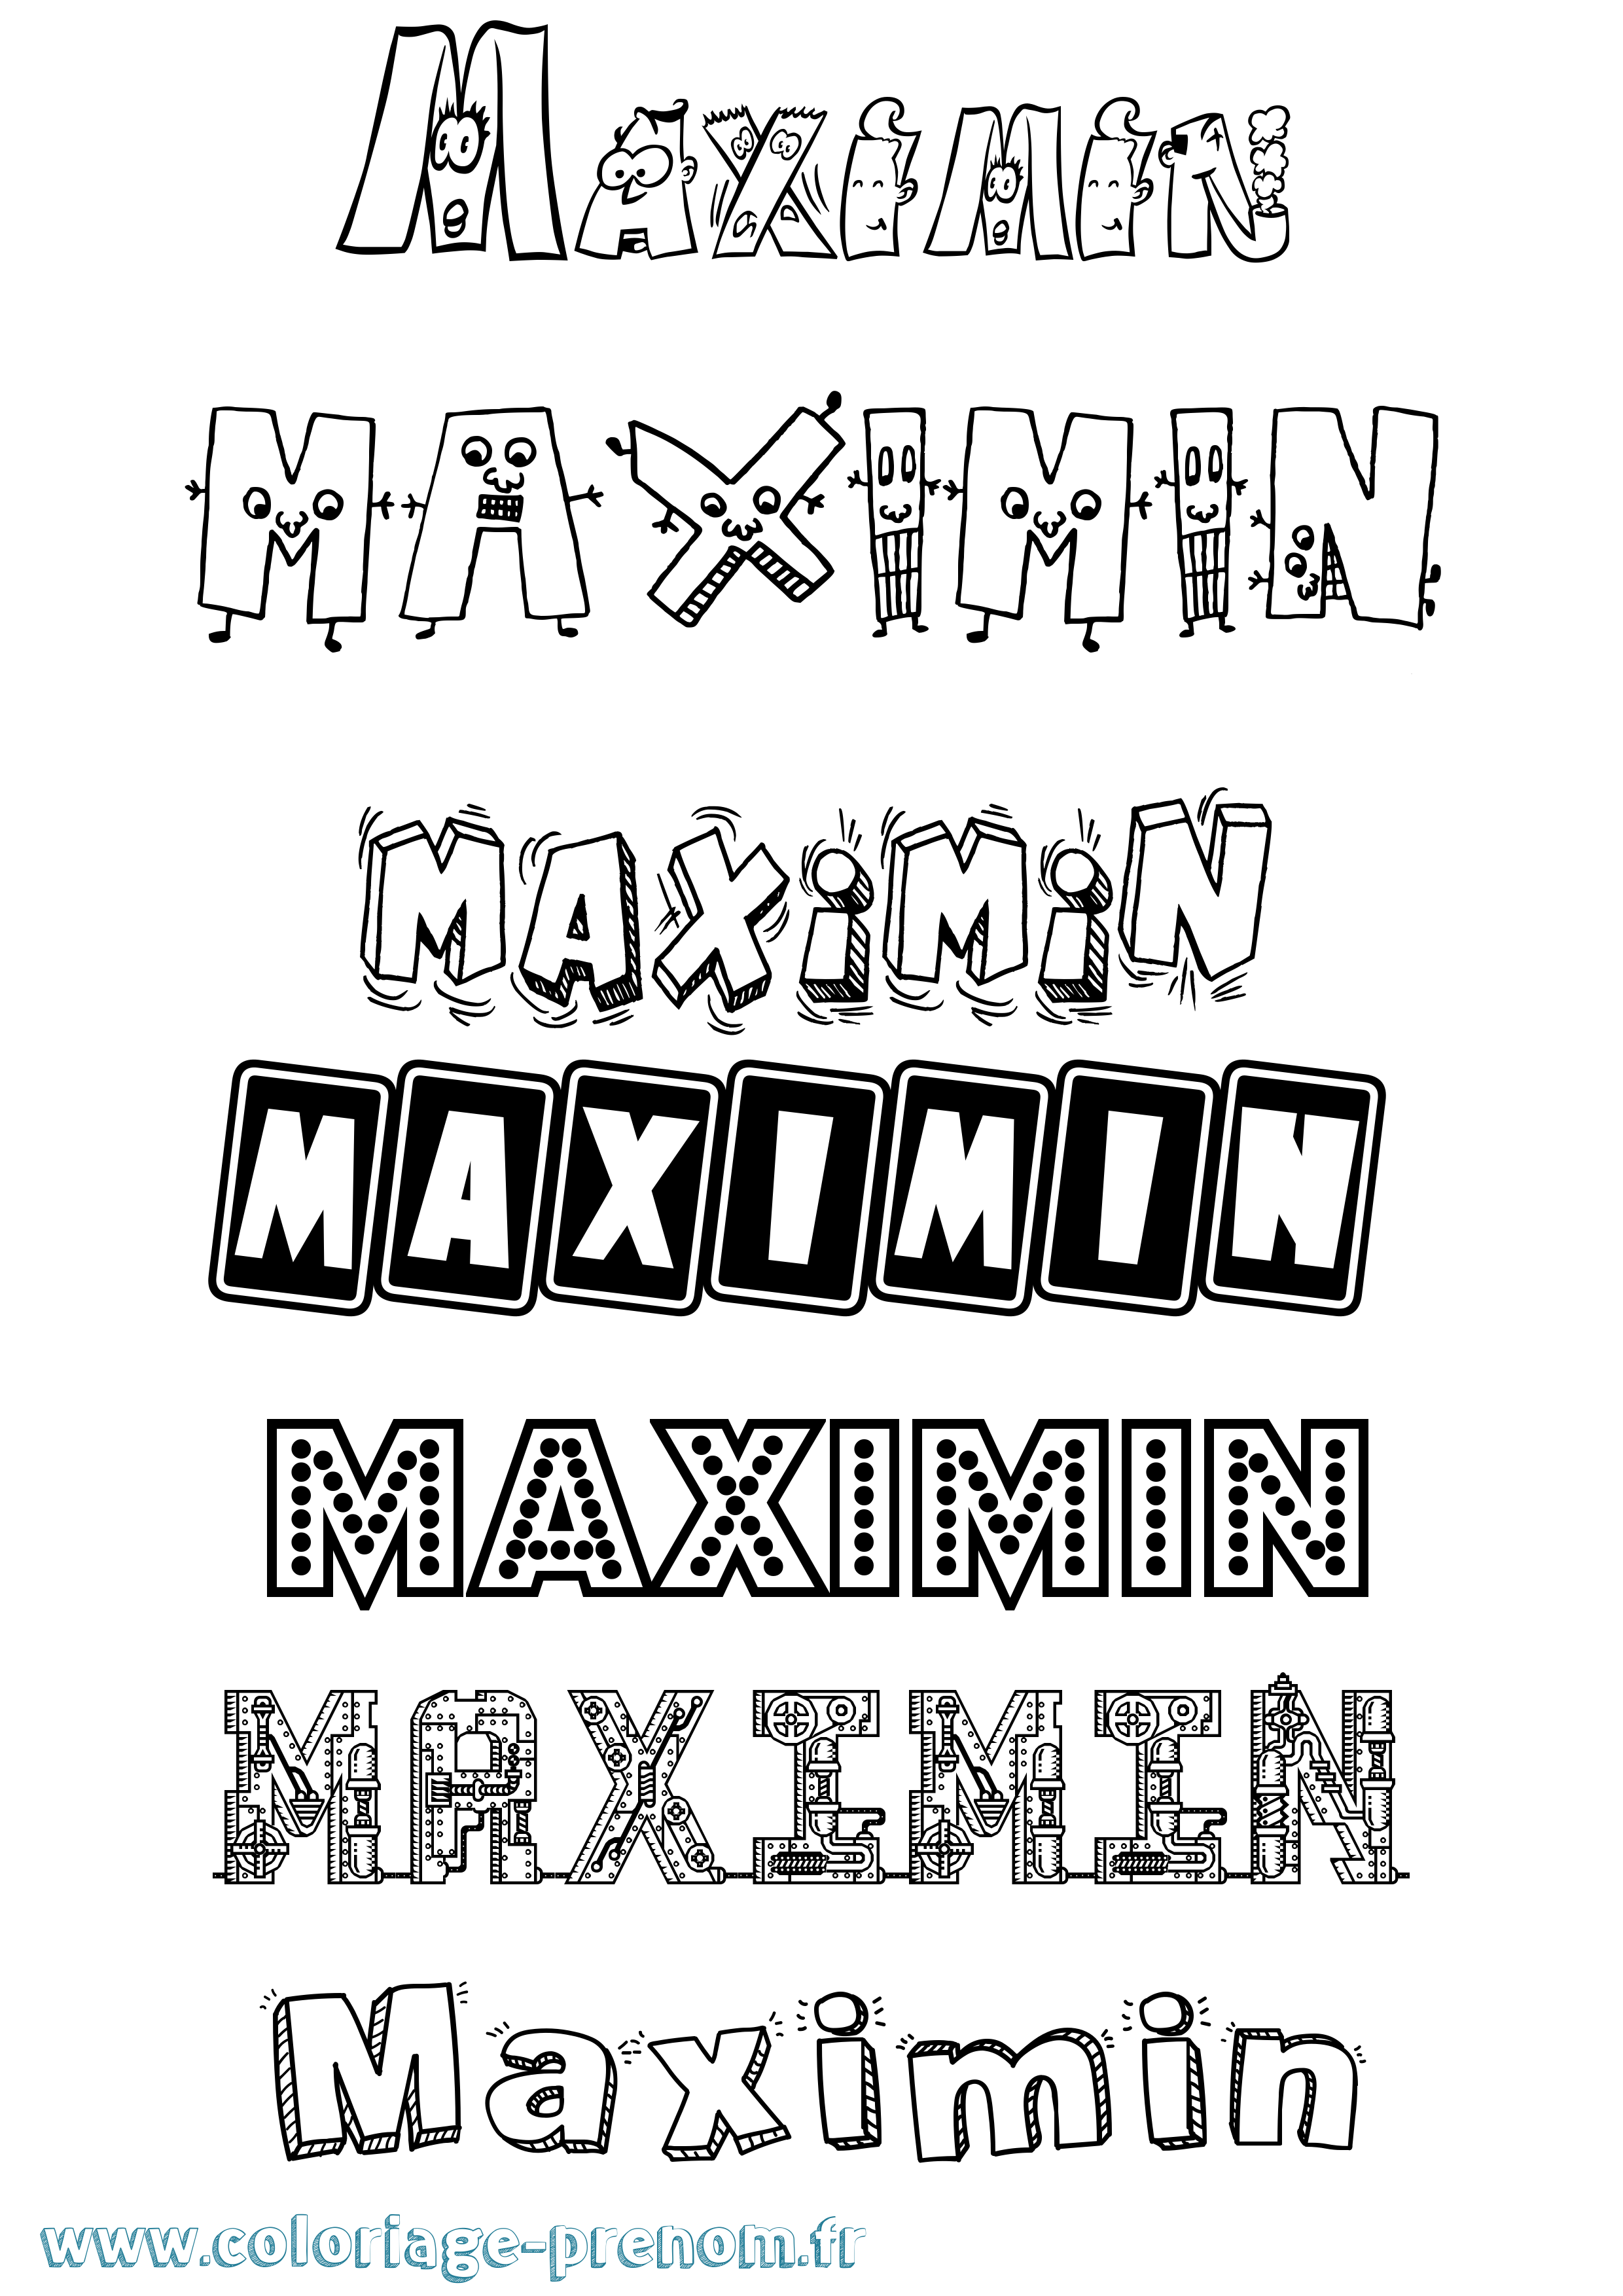 Coloriage prénom Maximin Fun